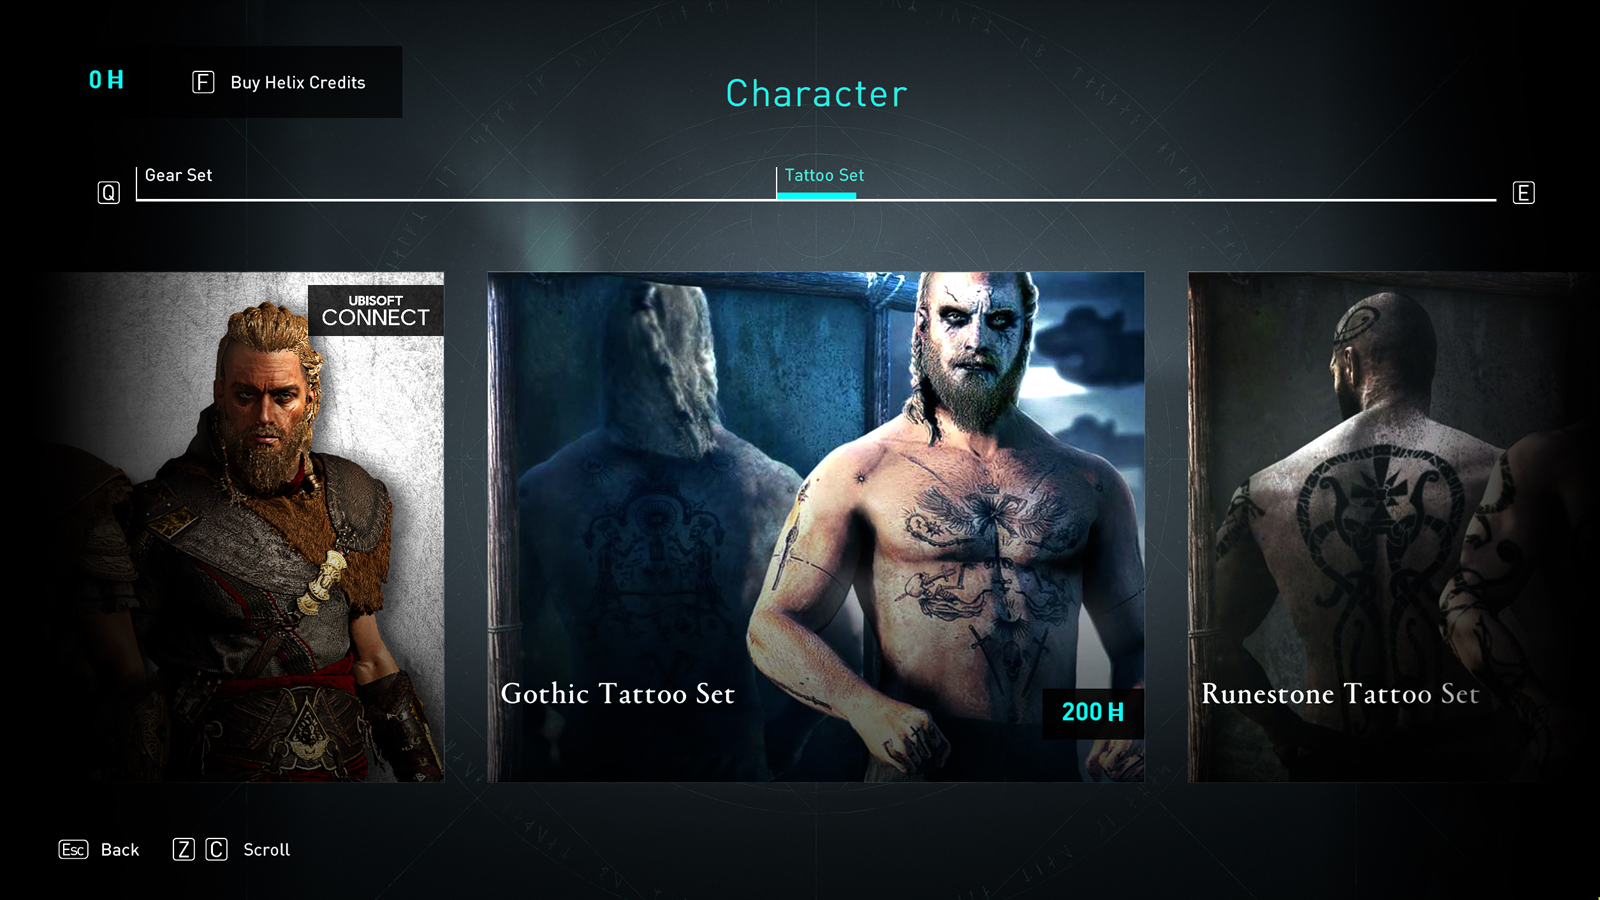 Gotisches Tattoo-Set in Assassins Creed Valhalla Ubisoft Store